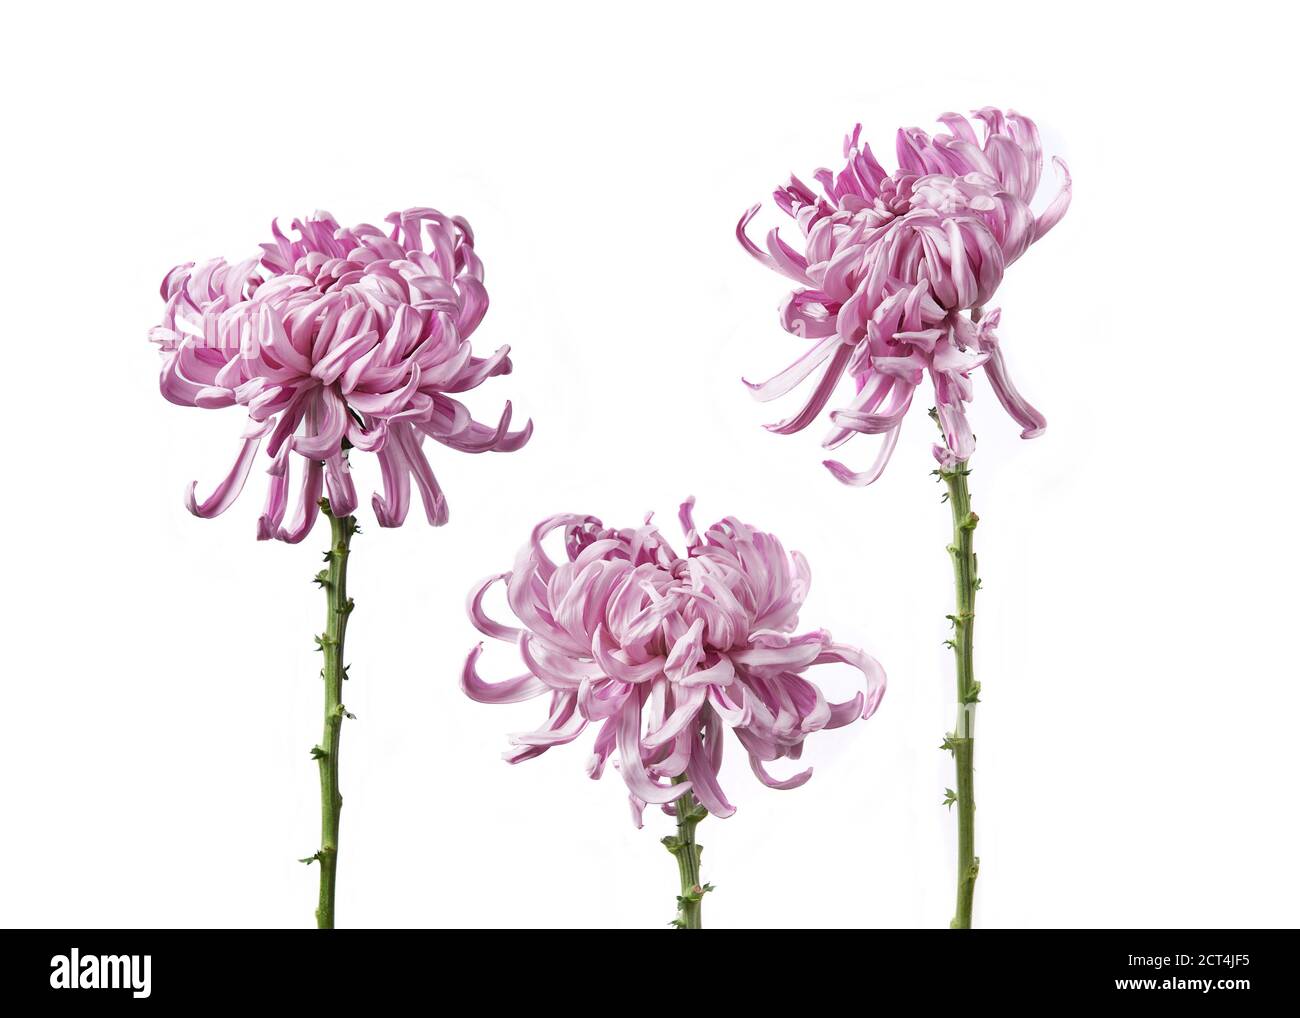 Chrysanthemum grandiflorum Vienna pink isolated on white background. Stock Photo